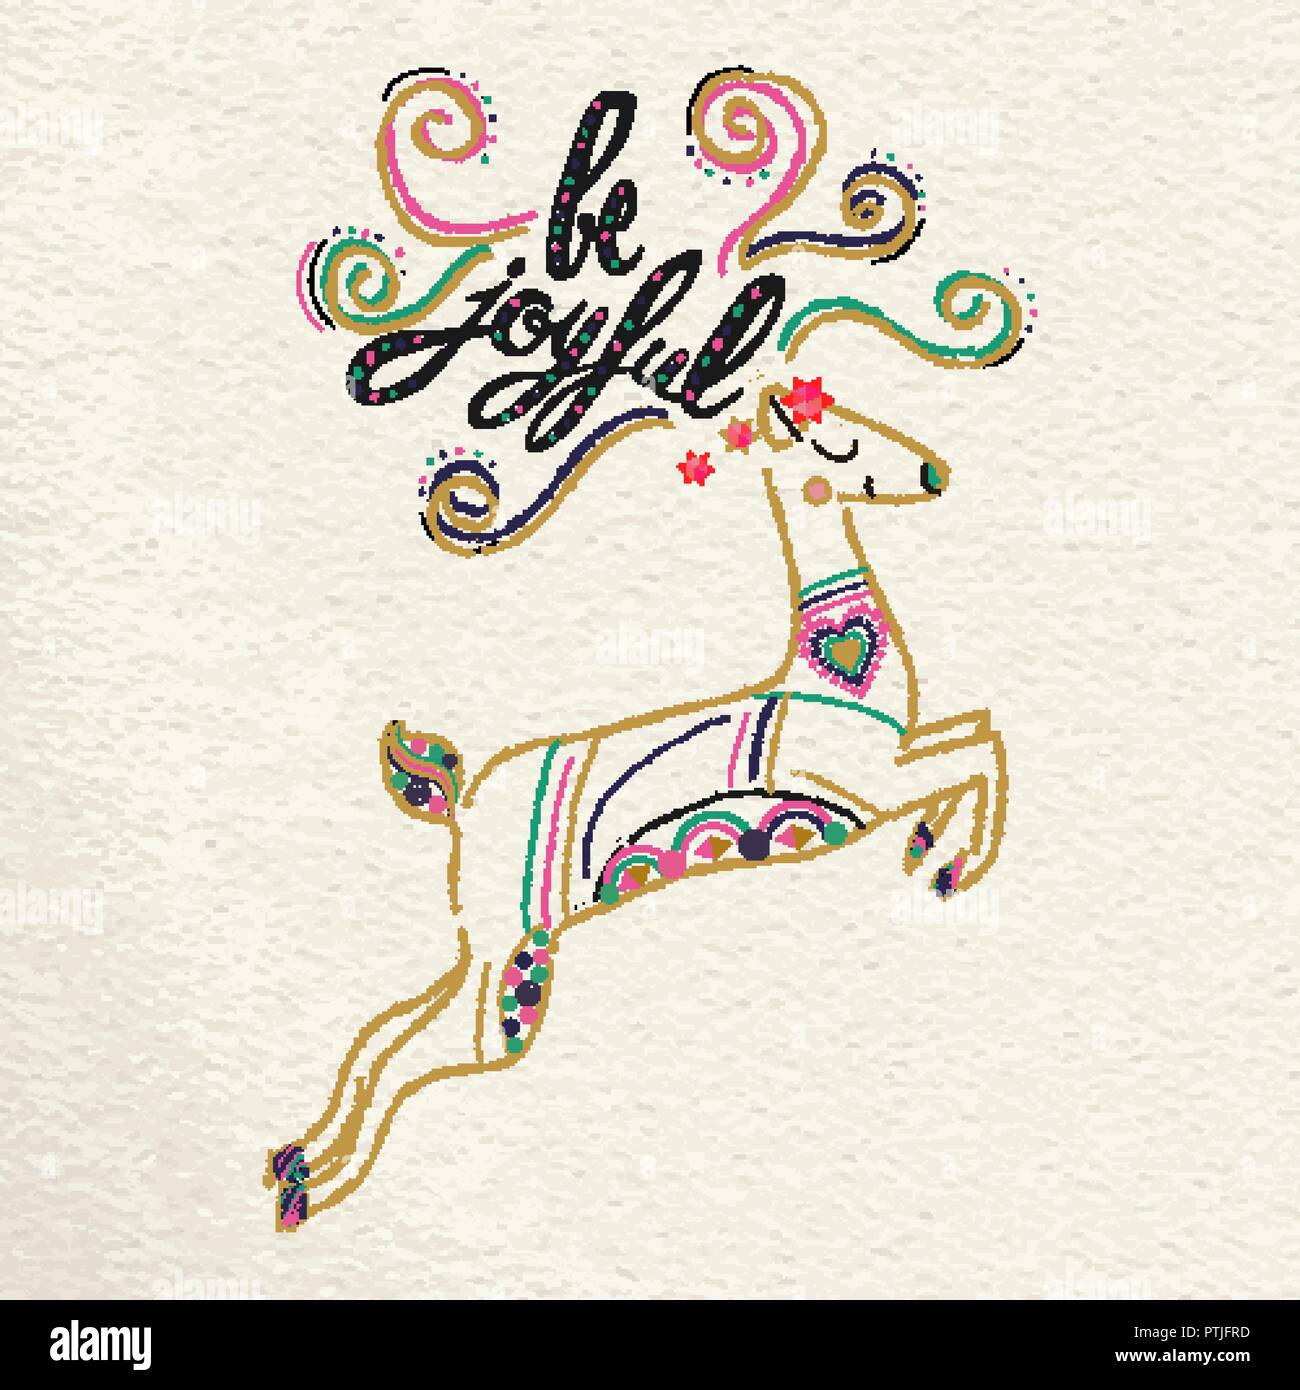 Süße Weihnachten Grußkarte boho Design für die Ferienzeit mit Hand gezeichnet Rentiere und Typografie. Kreative vintage Kalligraphie zitat Abbildung. Stock Vektor